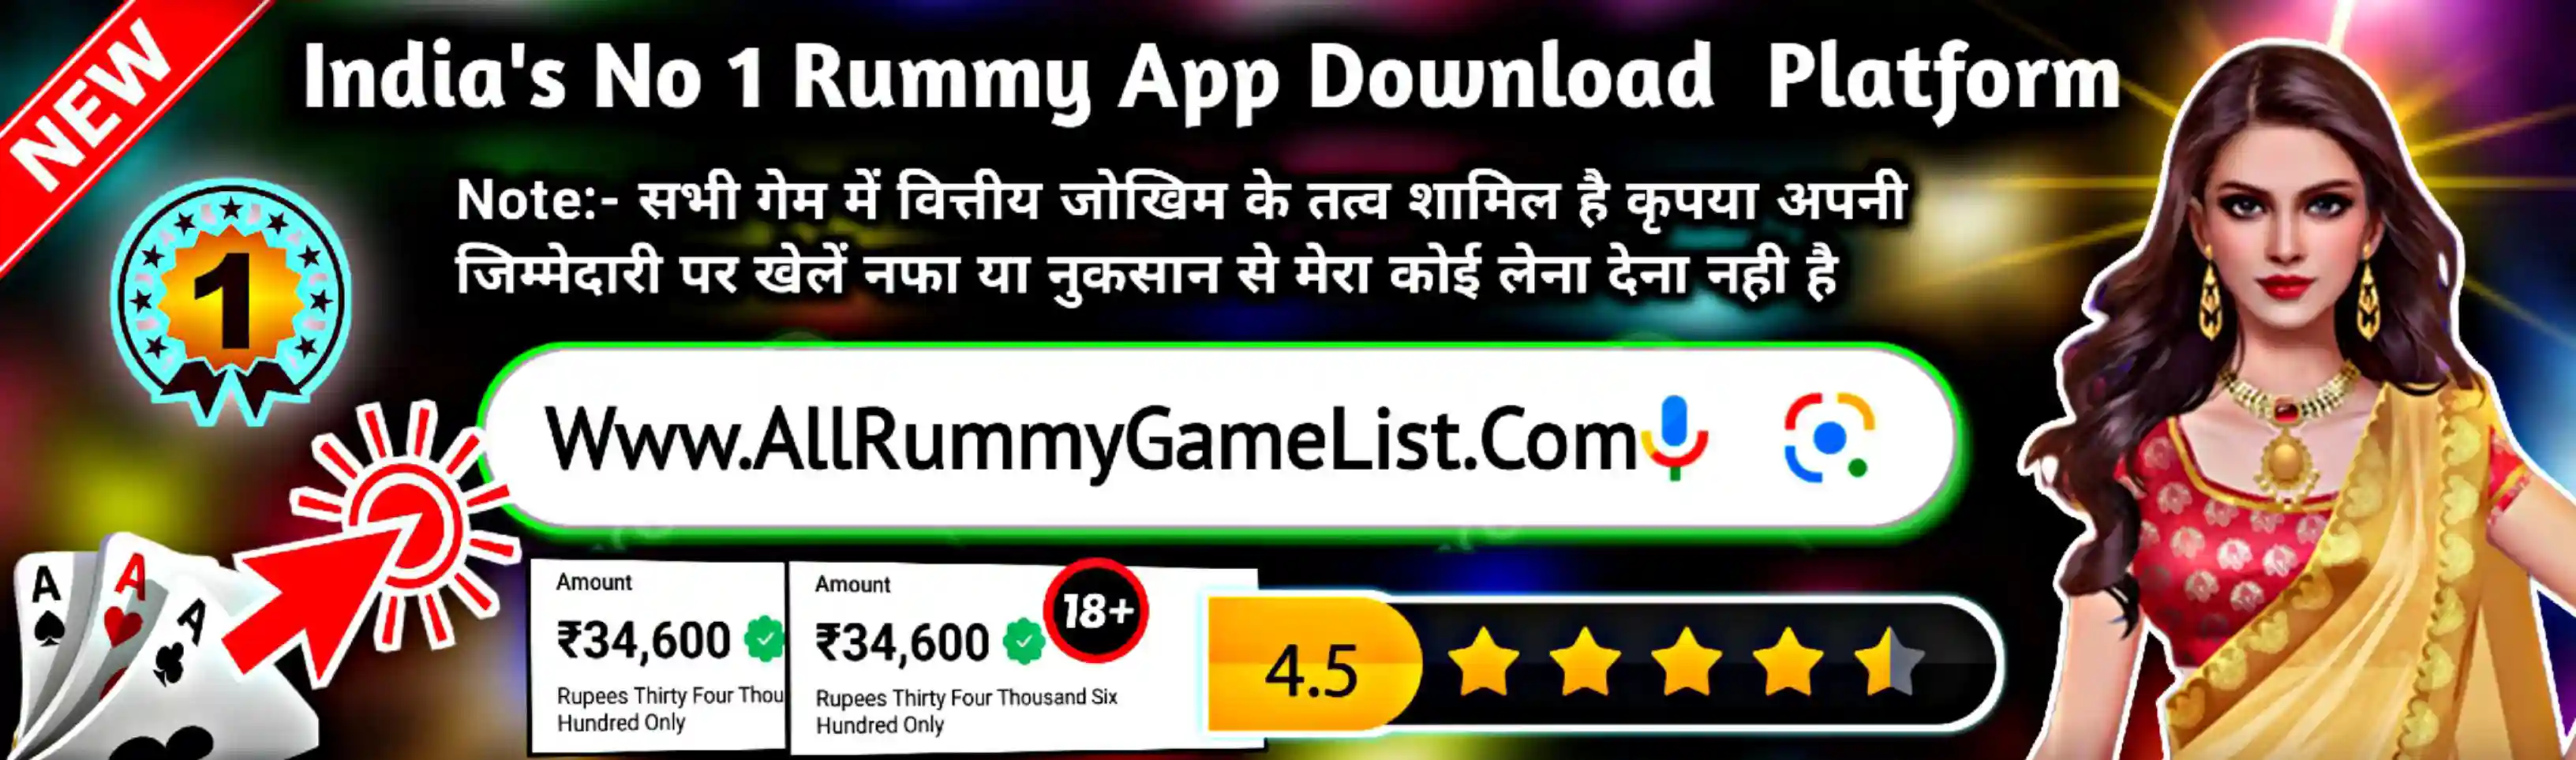 All Rummy Apps - All Rummy App - AllRummyGameList Banner